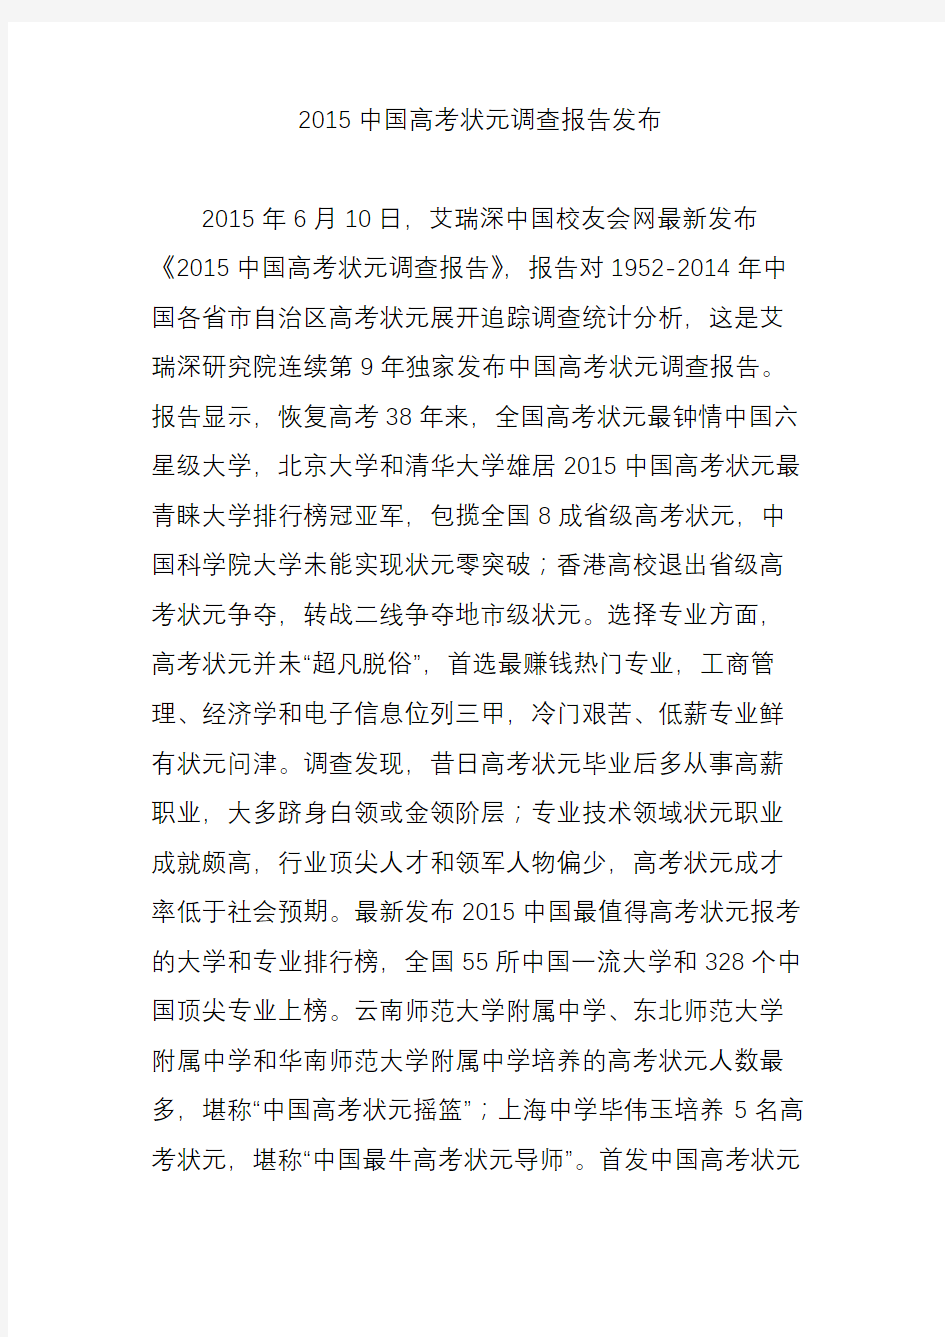 2015中国高考状元调查报告发布